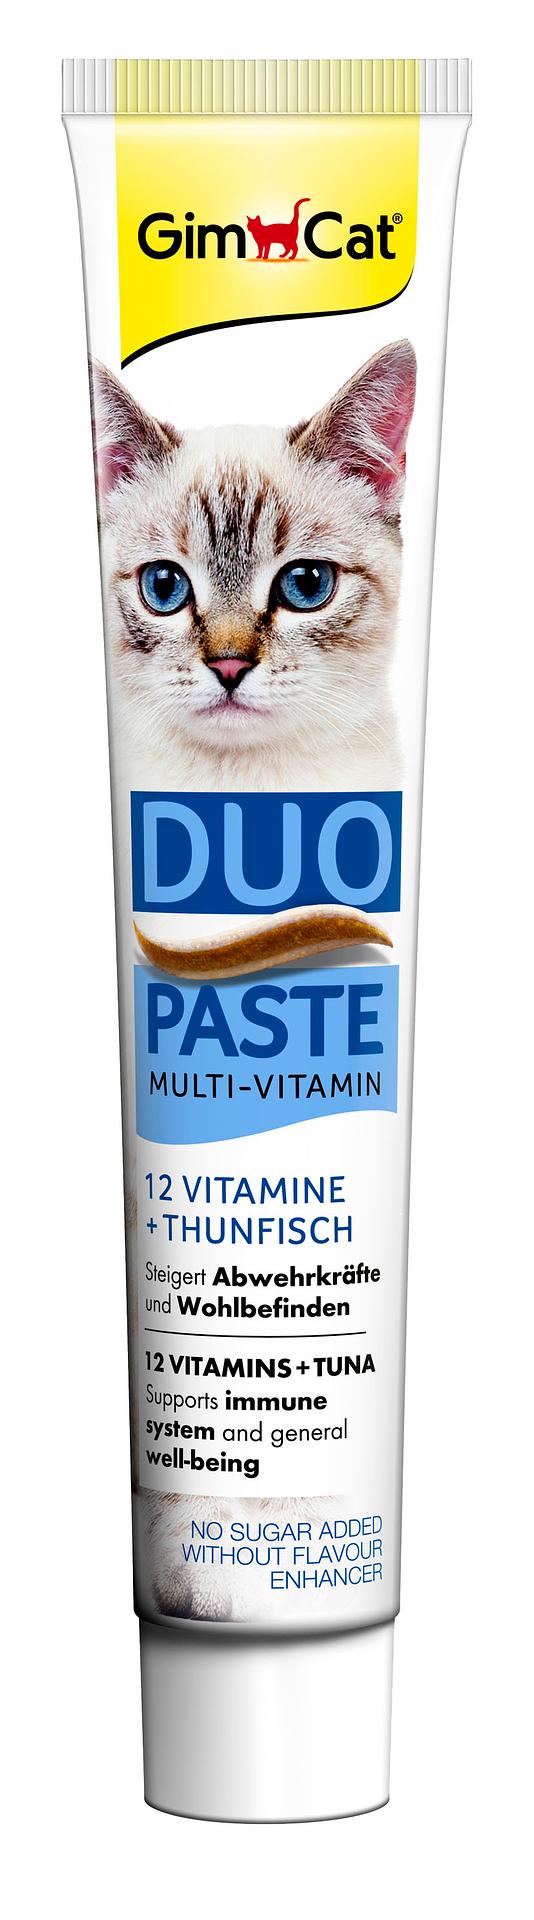 GimCat Duo Paste Multi-Vitamin